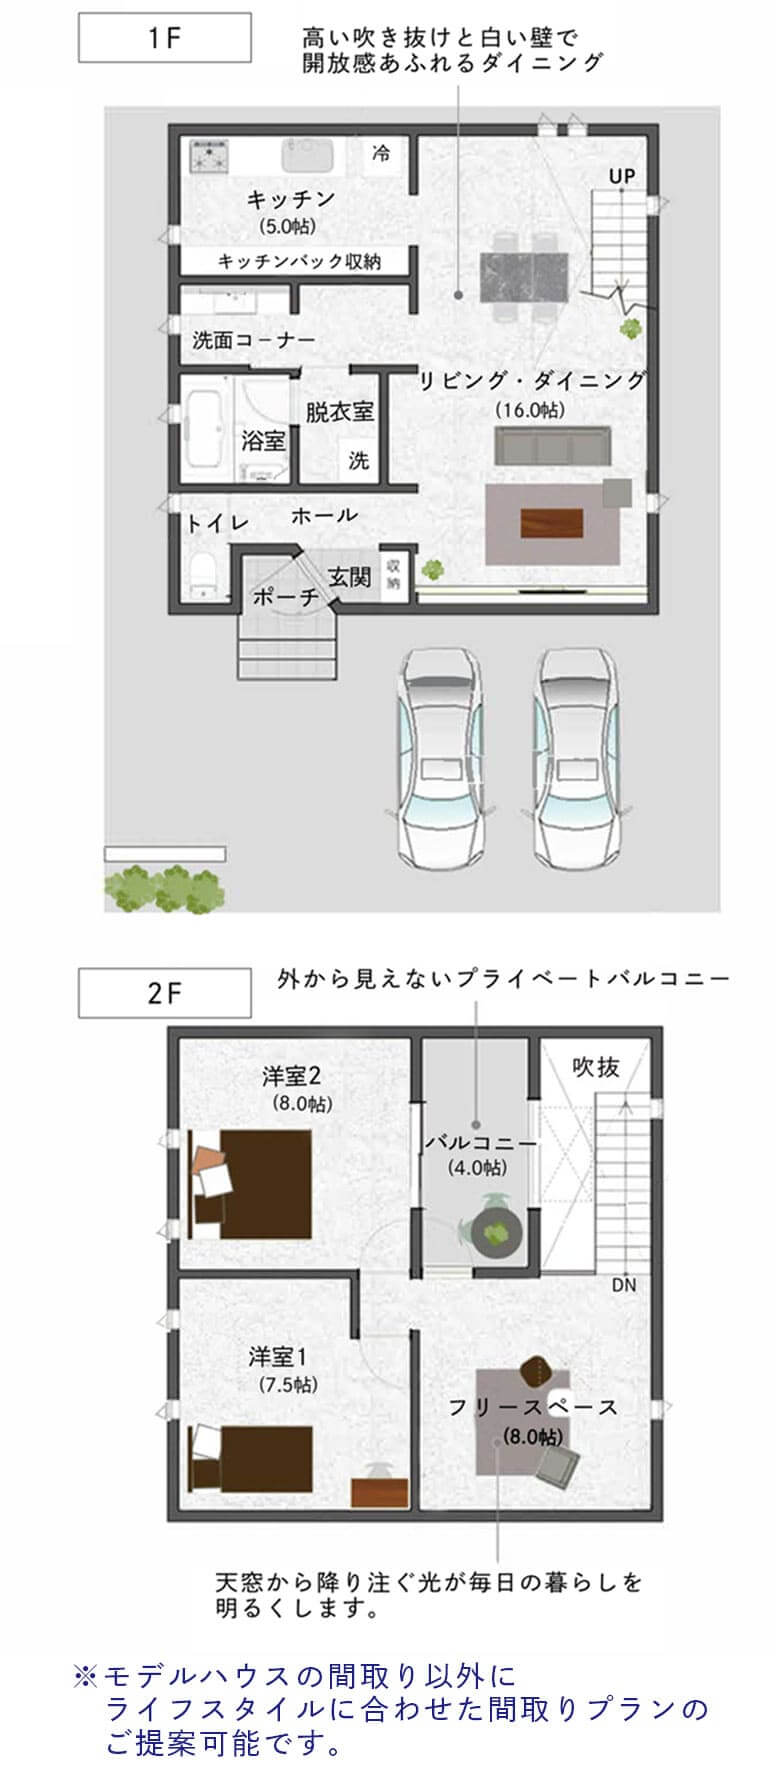 casa cube 間取り1F【casa cube】-大阪・堺の工務店ラックハウジング